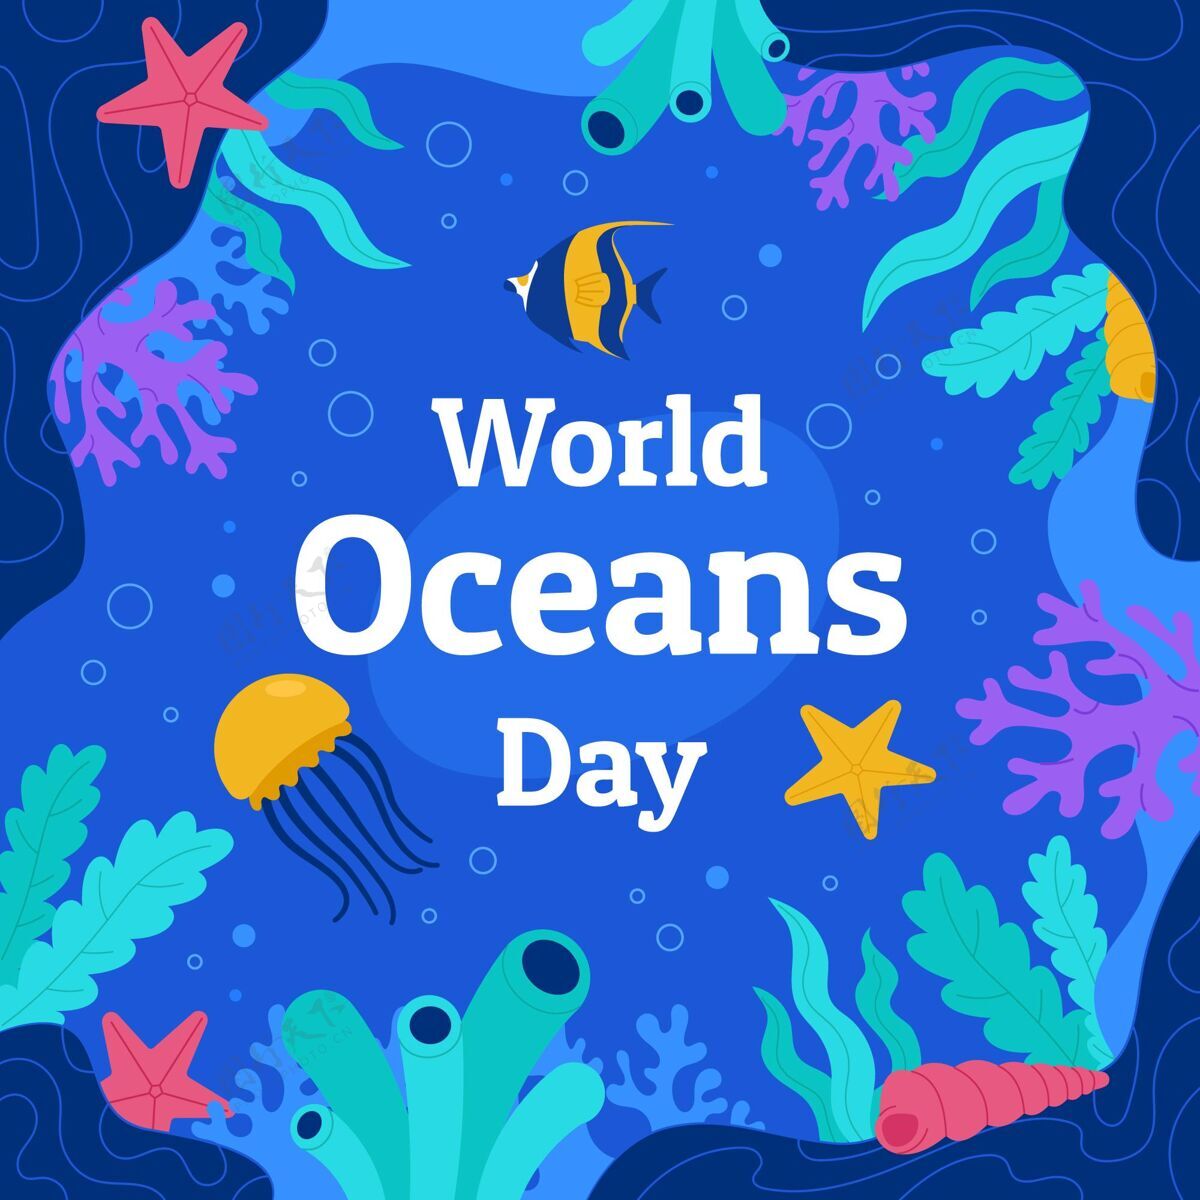 平面设计有机平面世界海洋日插画国际环境海洋